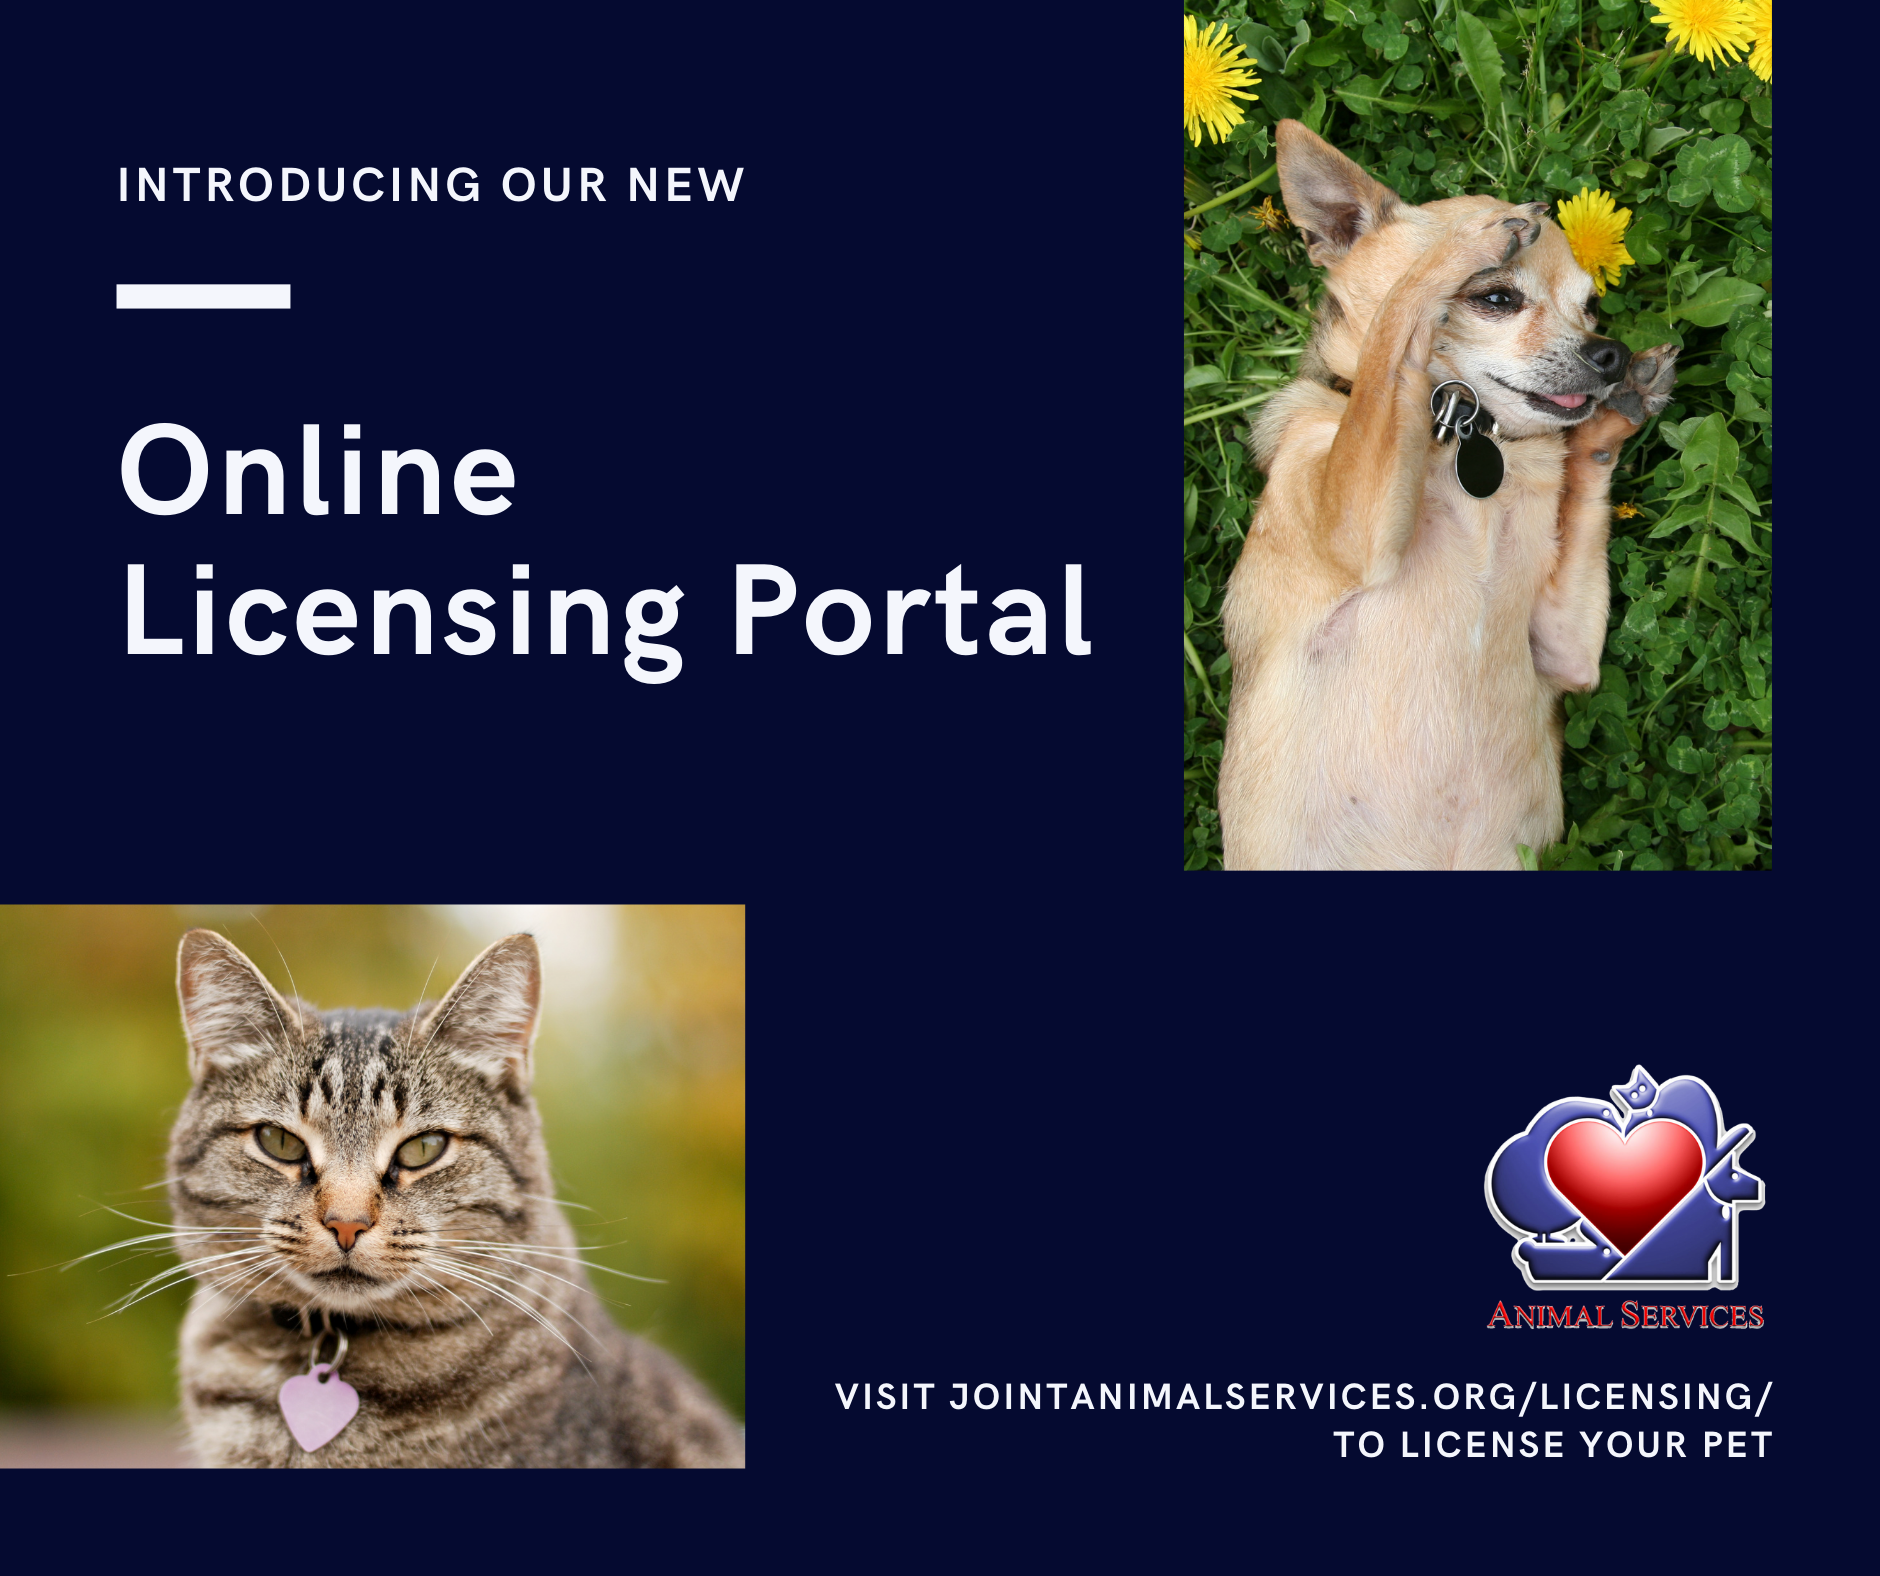 Online Licensing Portal